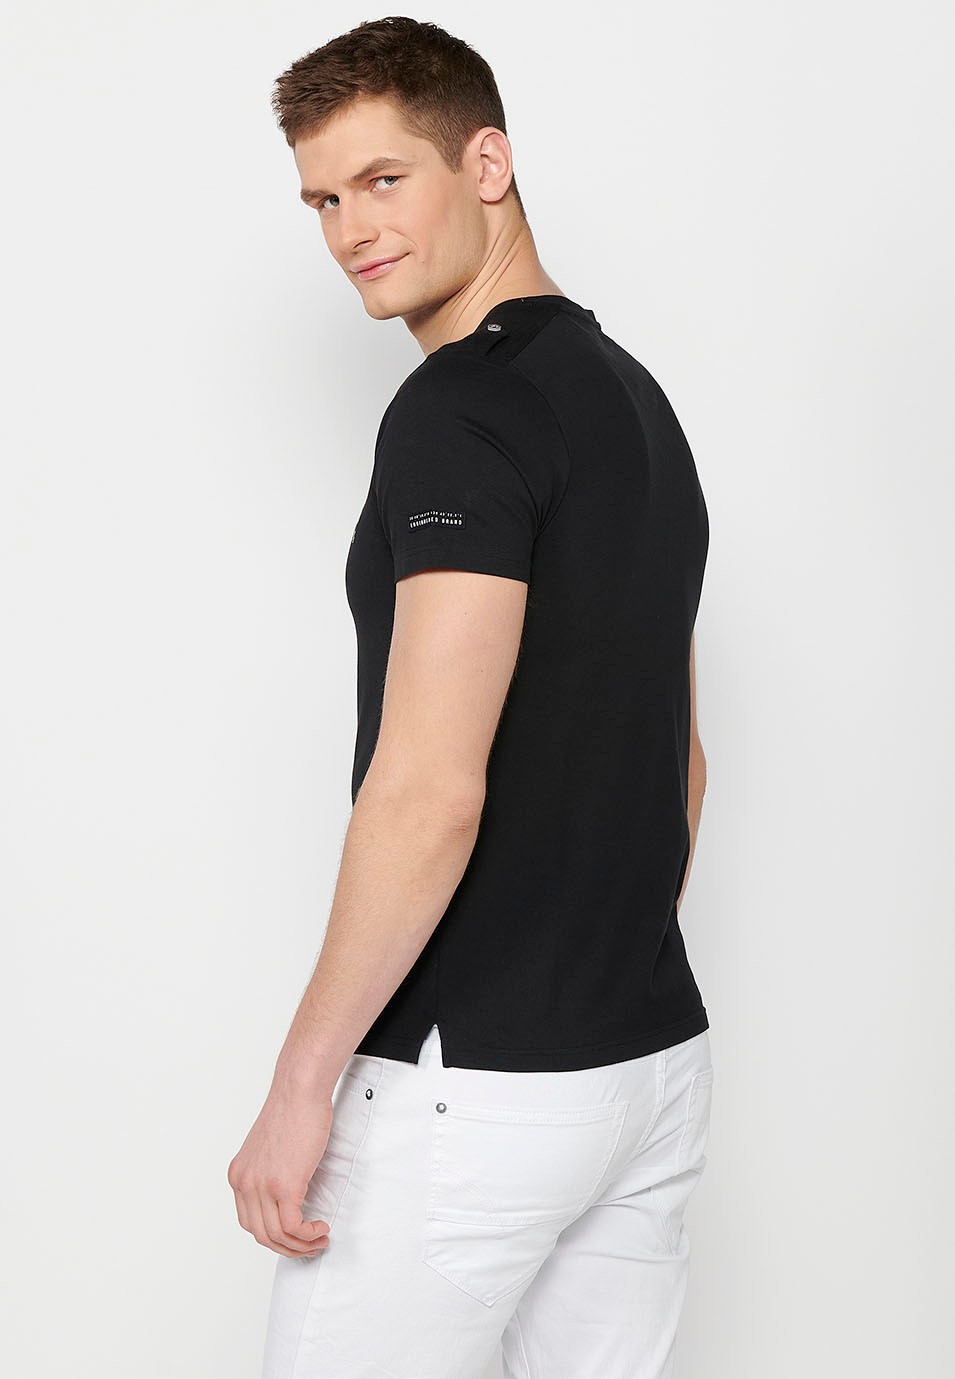 Camiseta de manga corta de algodon, cuello redondo con abertura abotonada, color negropara hombre